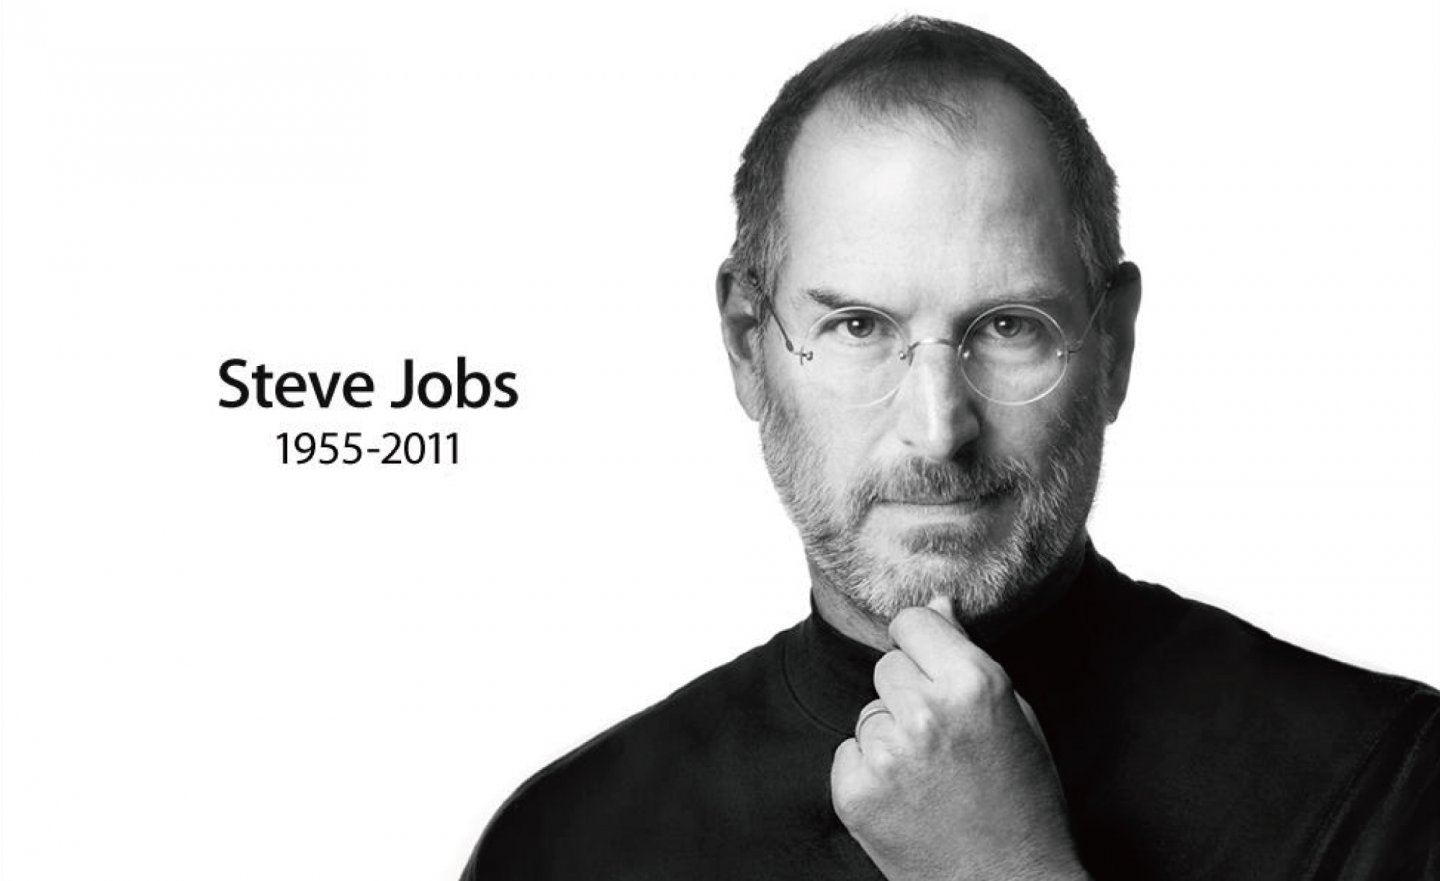 【免費】Steve Jobs 賈伯斯電子書上架，收錄生前演講、信件及未公開資料